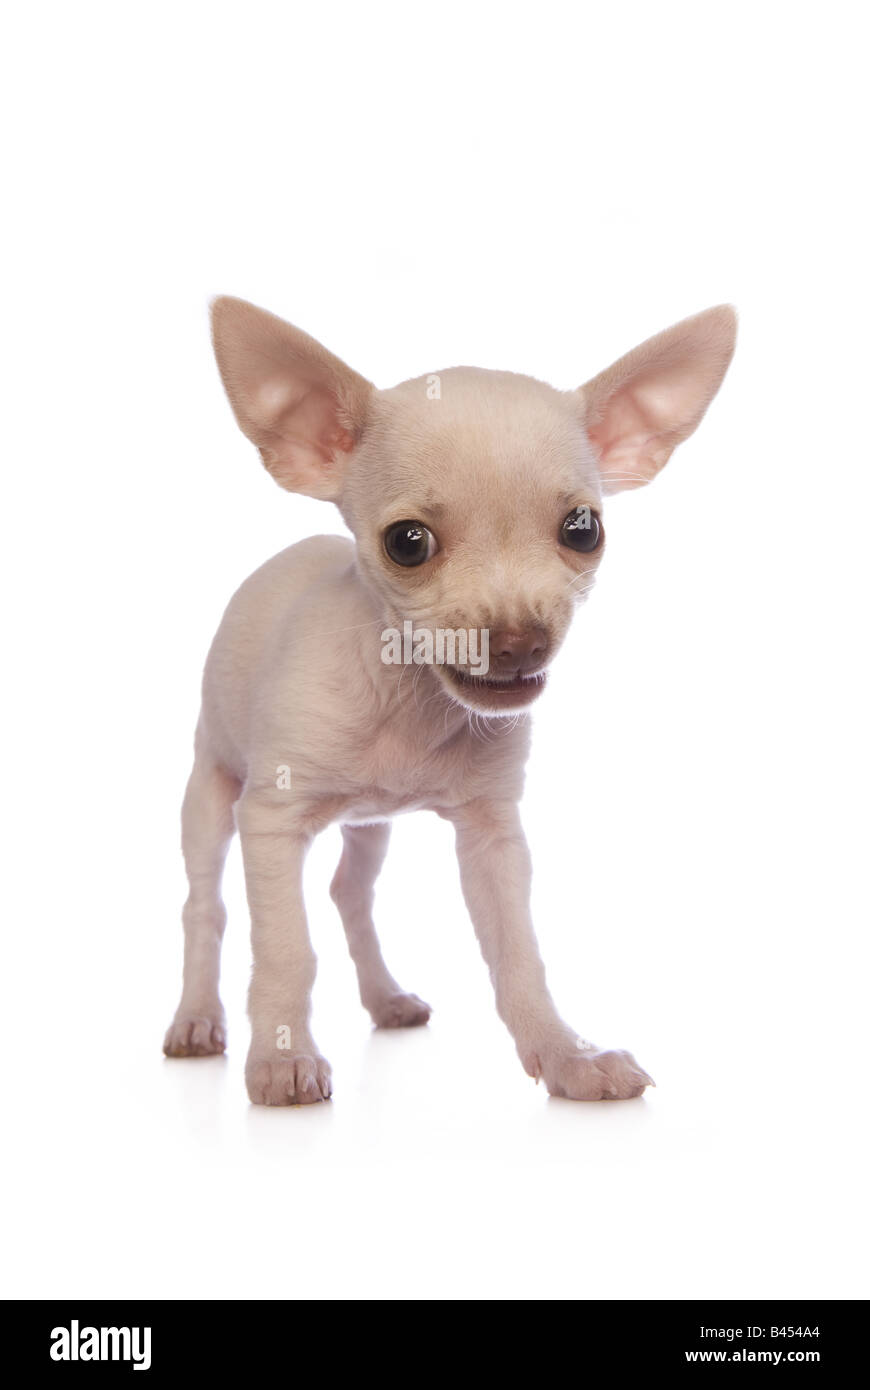 Carino color crema shorthaired Chihuahua cucciolo sorridente isolati su sfondo bianco Foto Stock